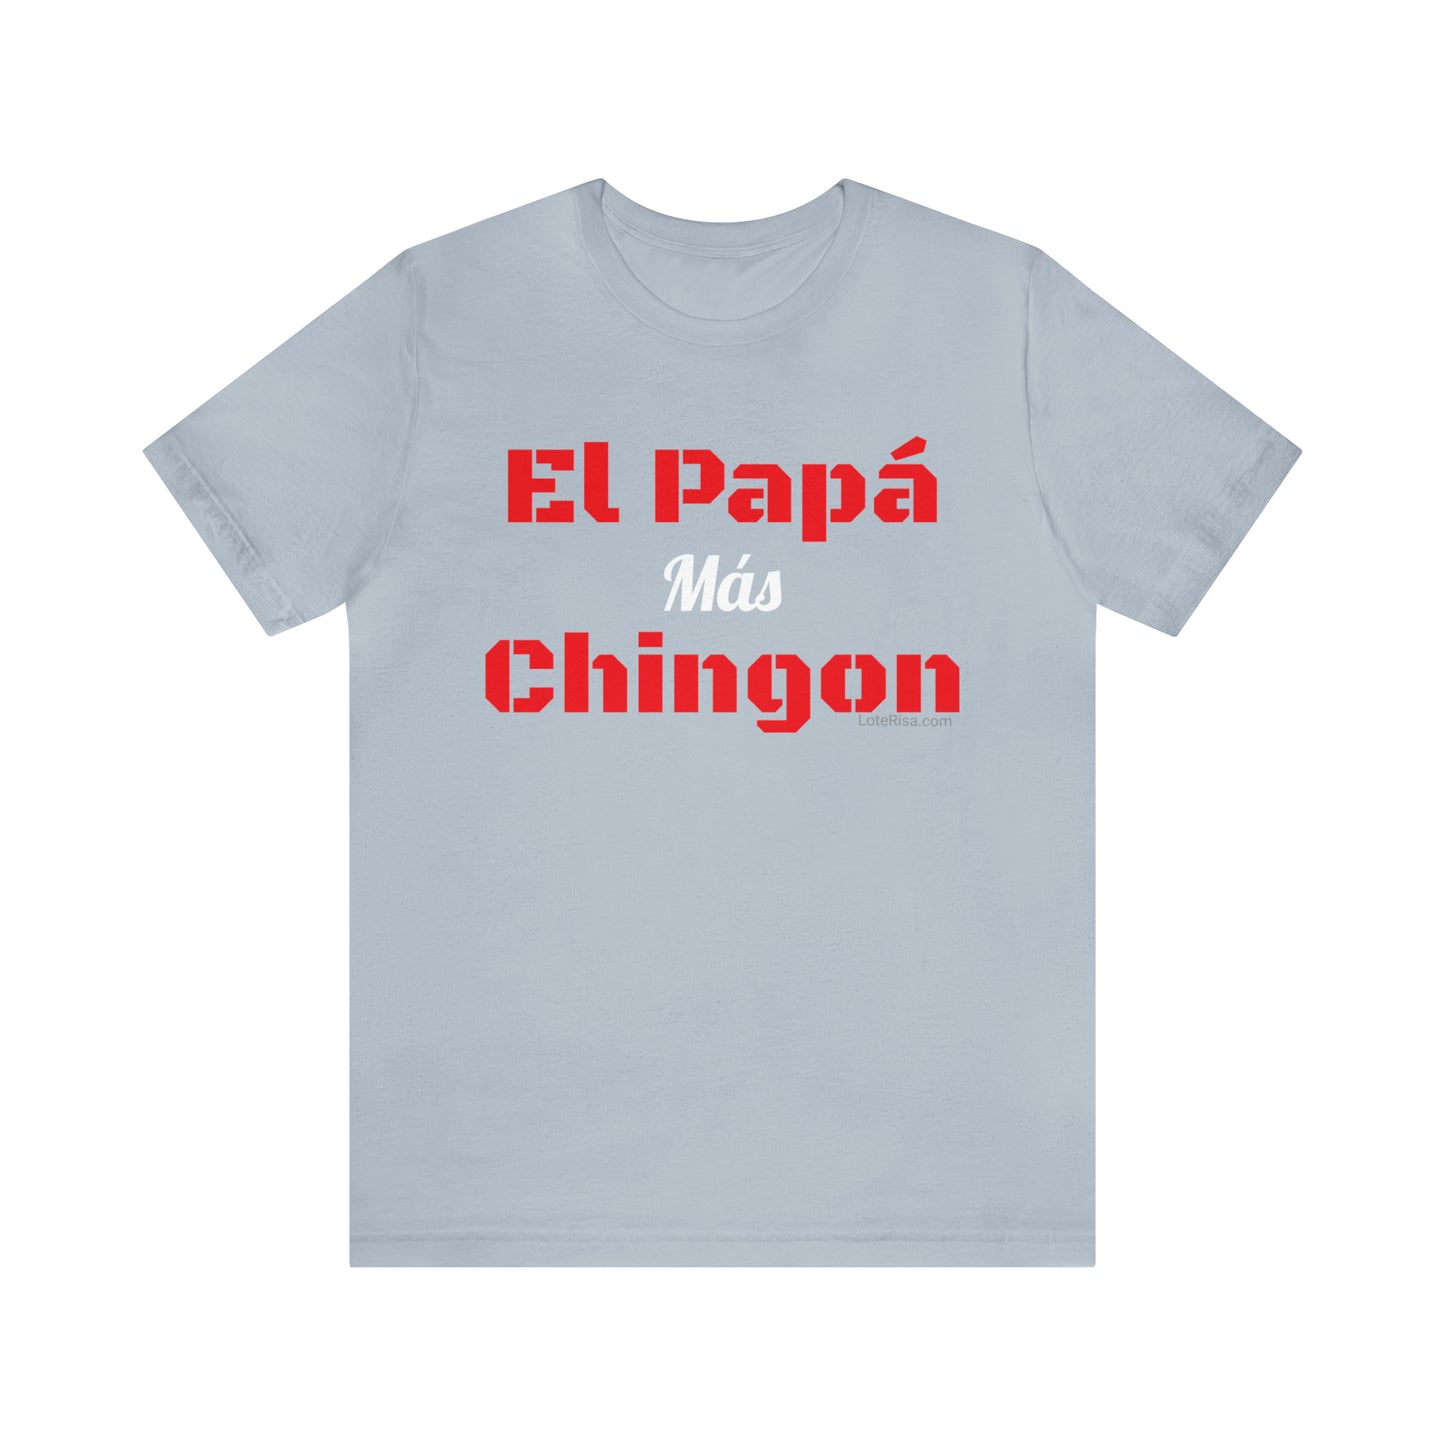 El Papá Mas Chingon T-Shirt